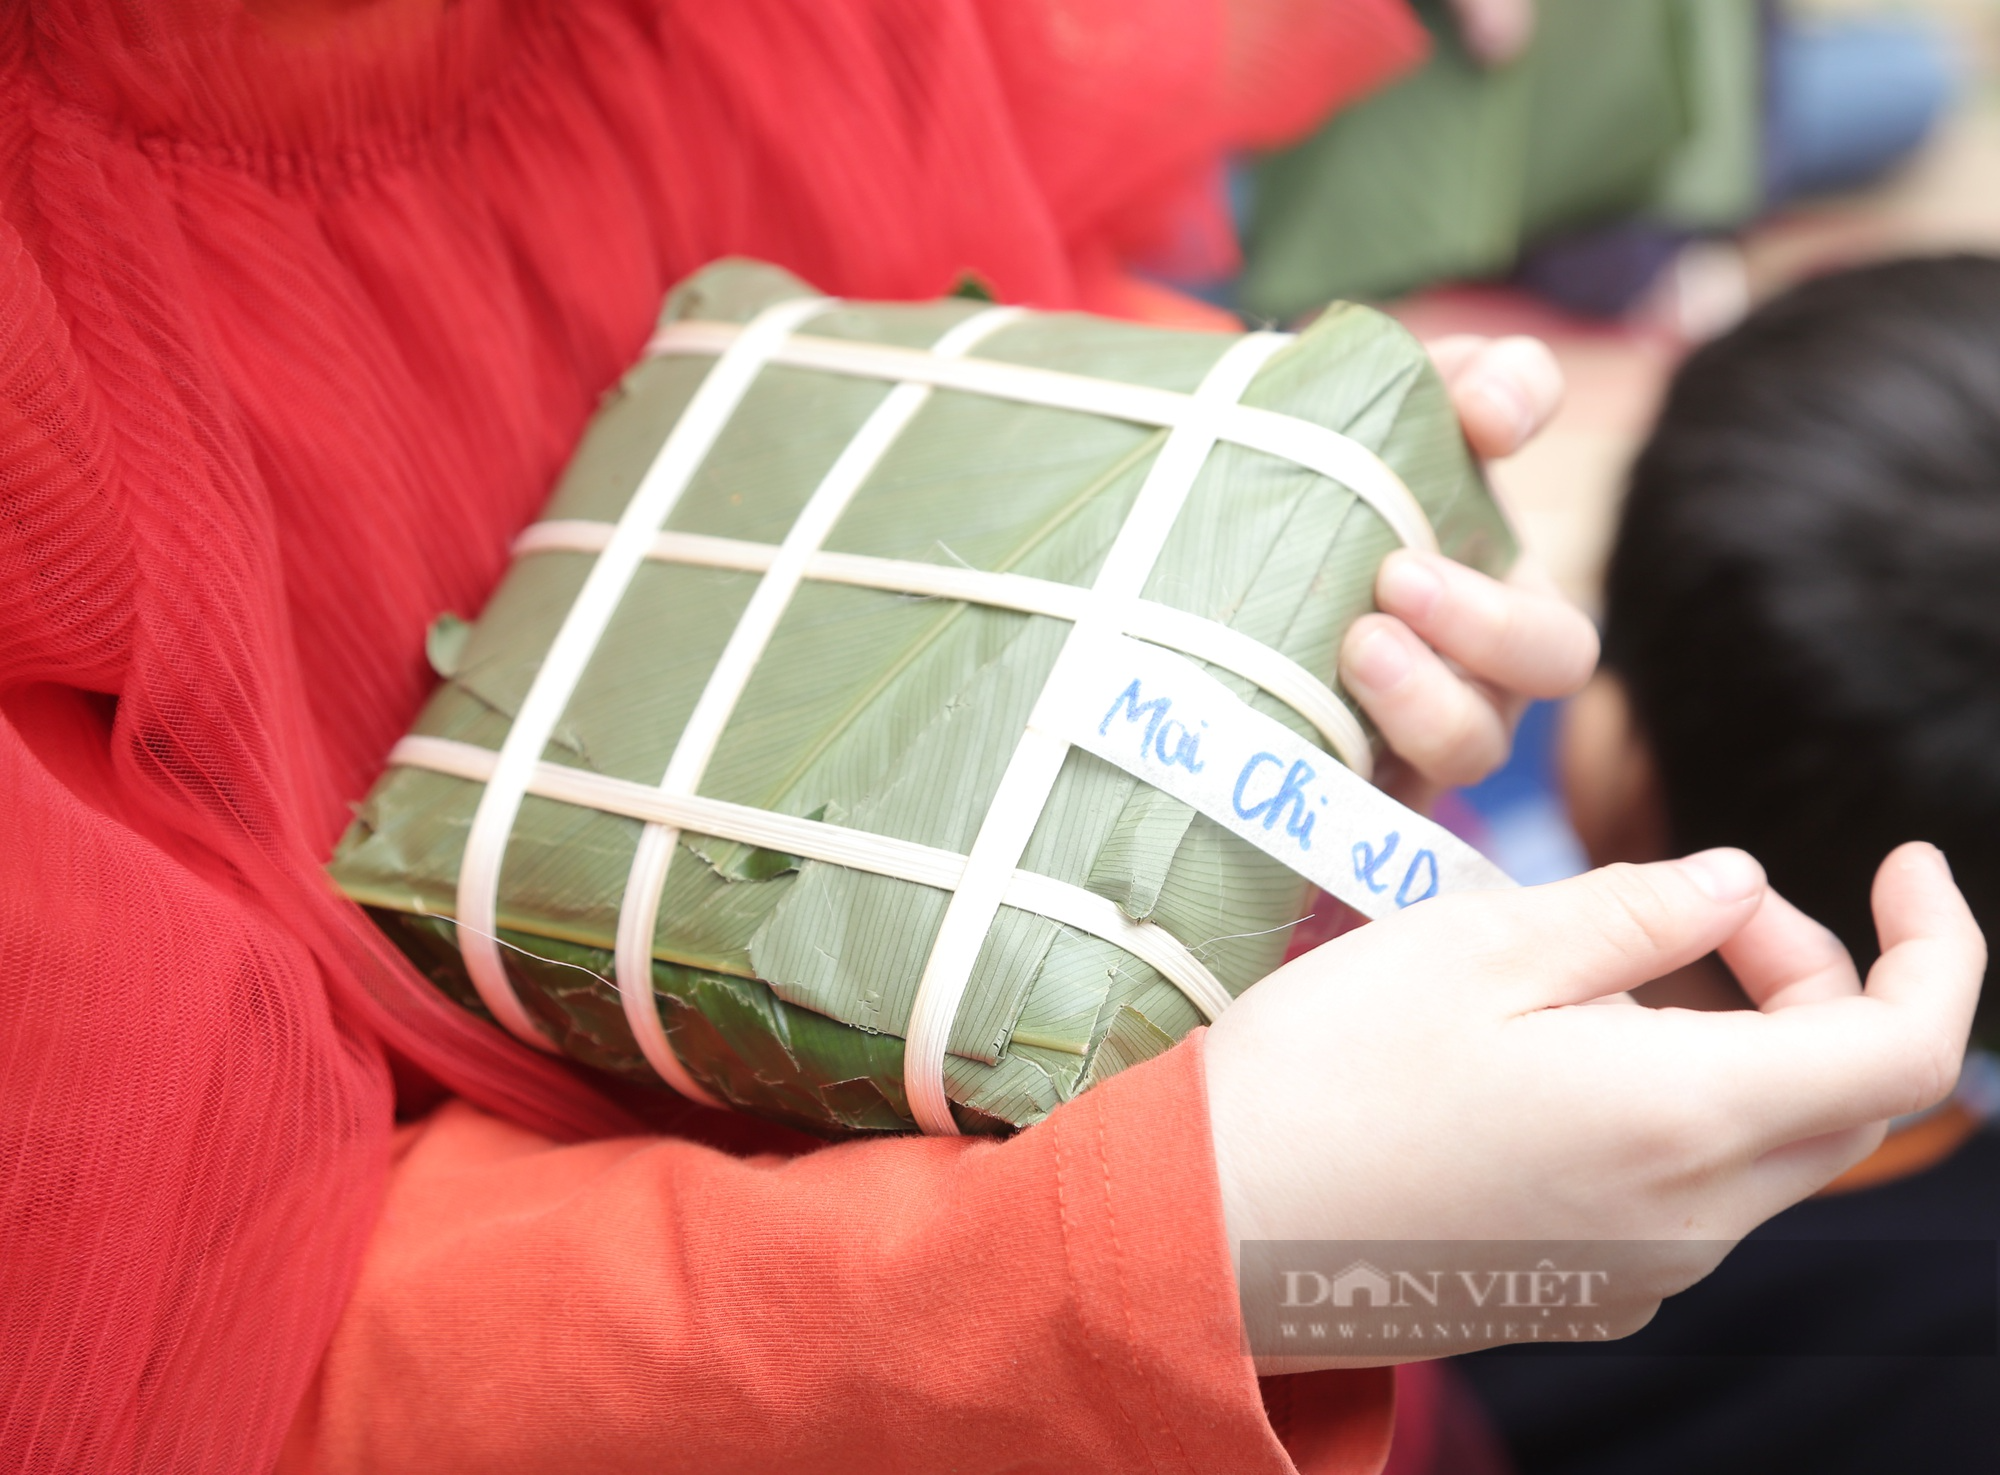 Gần 2.000 học sinh tiểu học ở Hà Nội trải nghiệm gói bánh chưng trên sân trường - Ảnh 8.